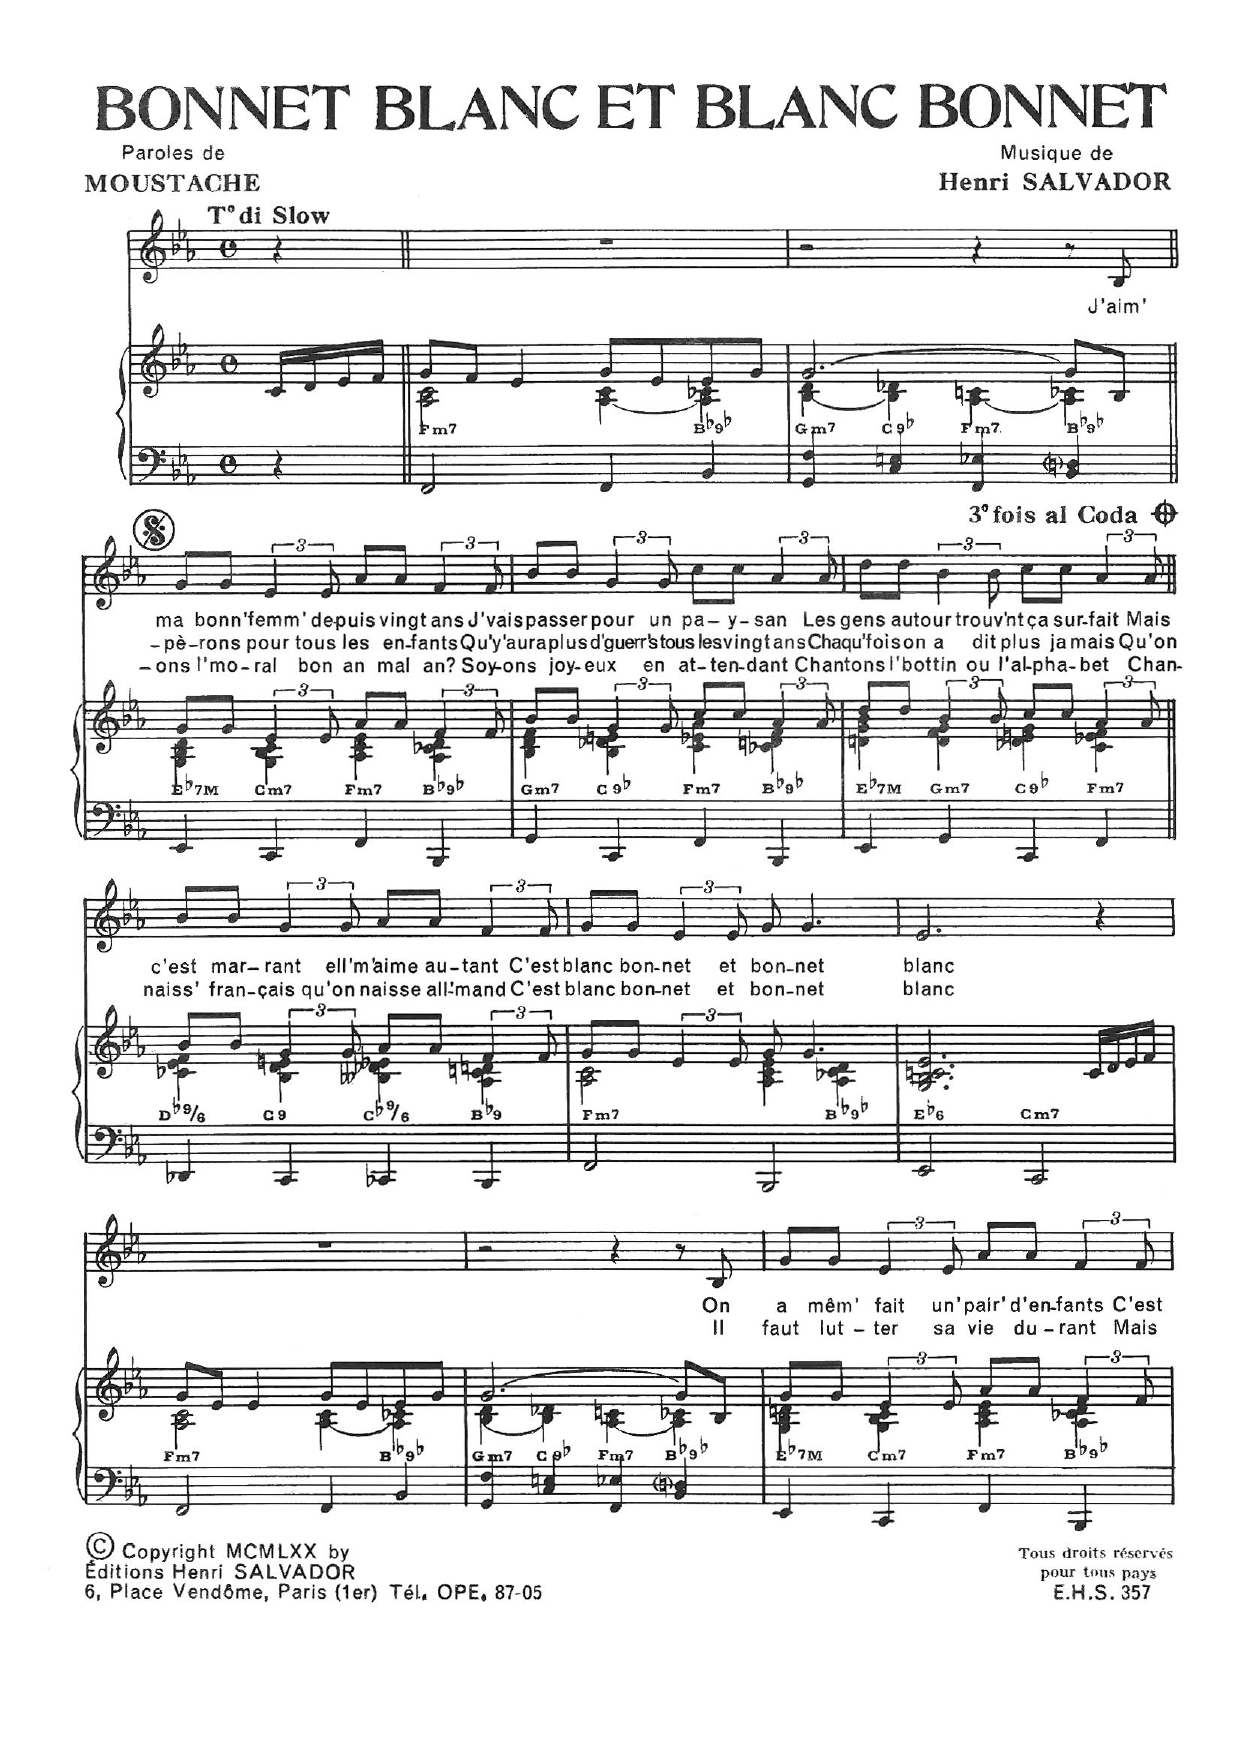 Henri Salvador Bonnet Blanc Et Blanc Bonnet Sheet Music Notes & Chords for Piano & Vocal - Download or Print PDF